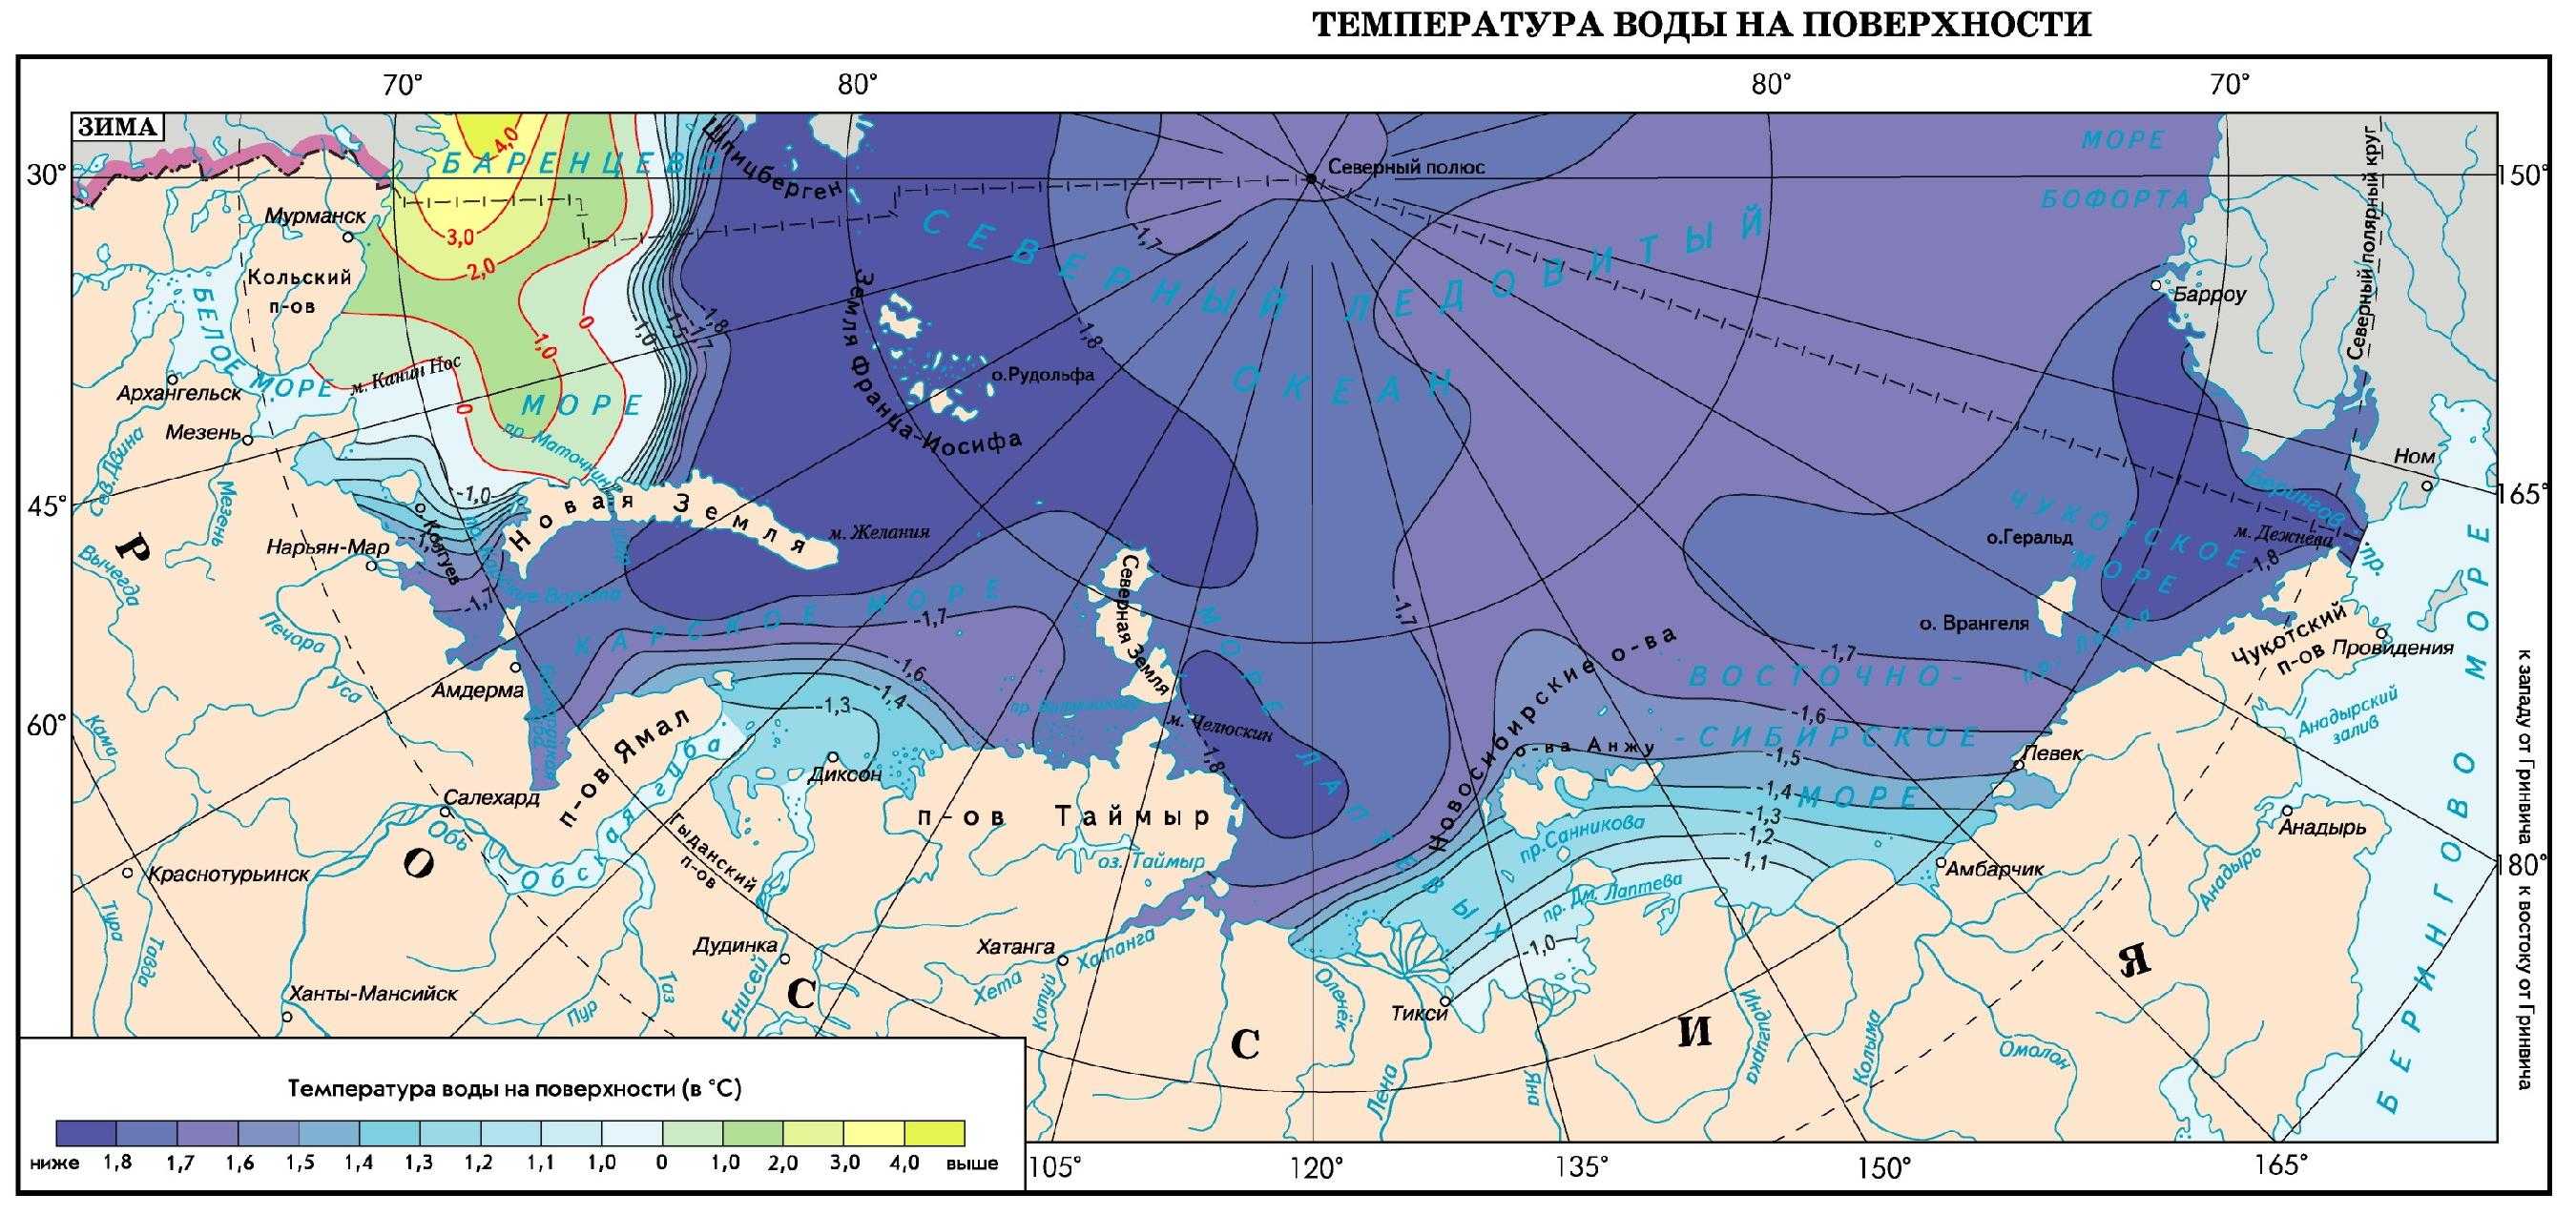 Чукотское море бассейн океана. Карта климата Северного Ледовитого океана. Климатическая карта Северного Ледовитого океана. Климатические пояса Северного Ледовитого океана. Климатические пояса Северного Ледовитого океана карта.